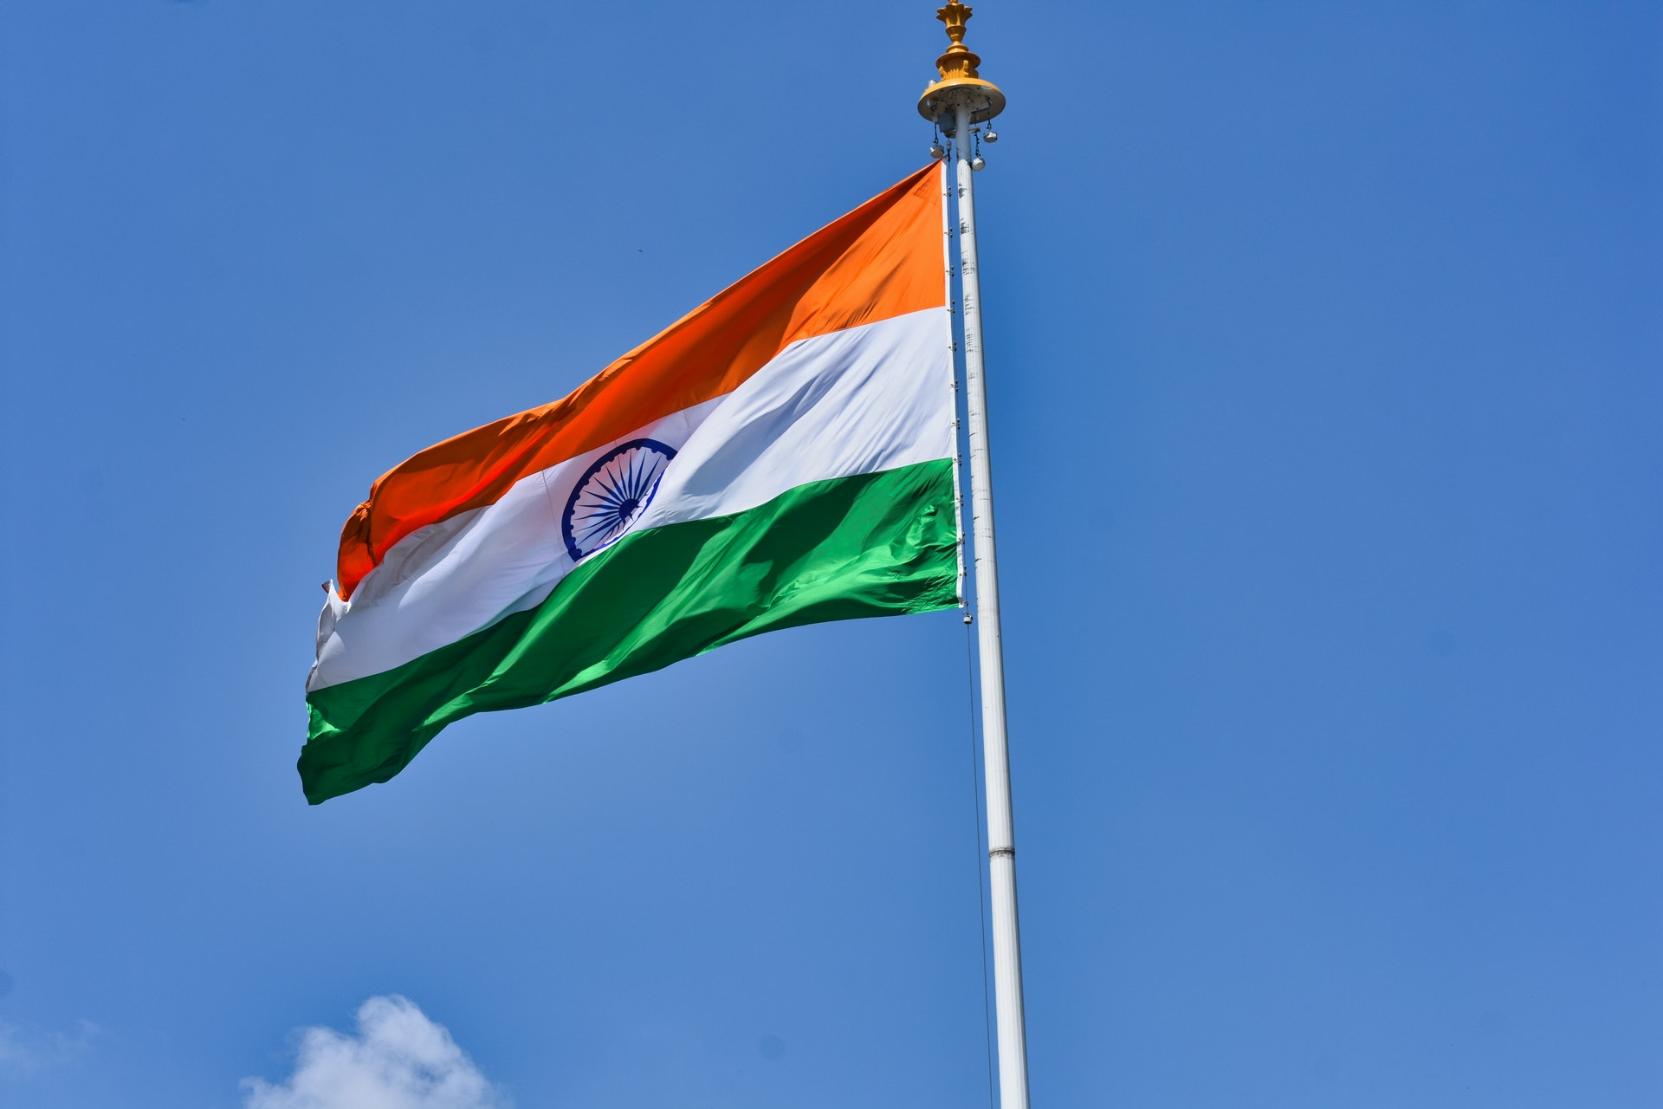 Indian flag on a pole.